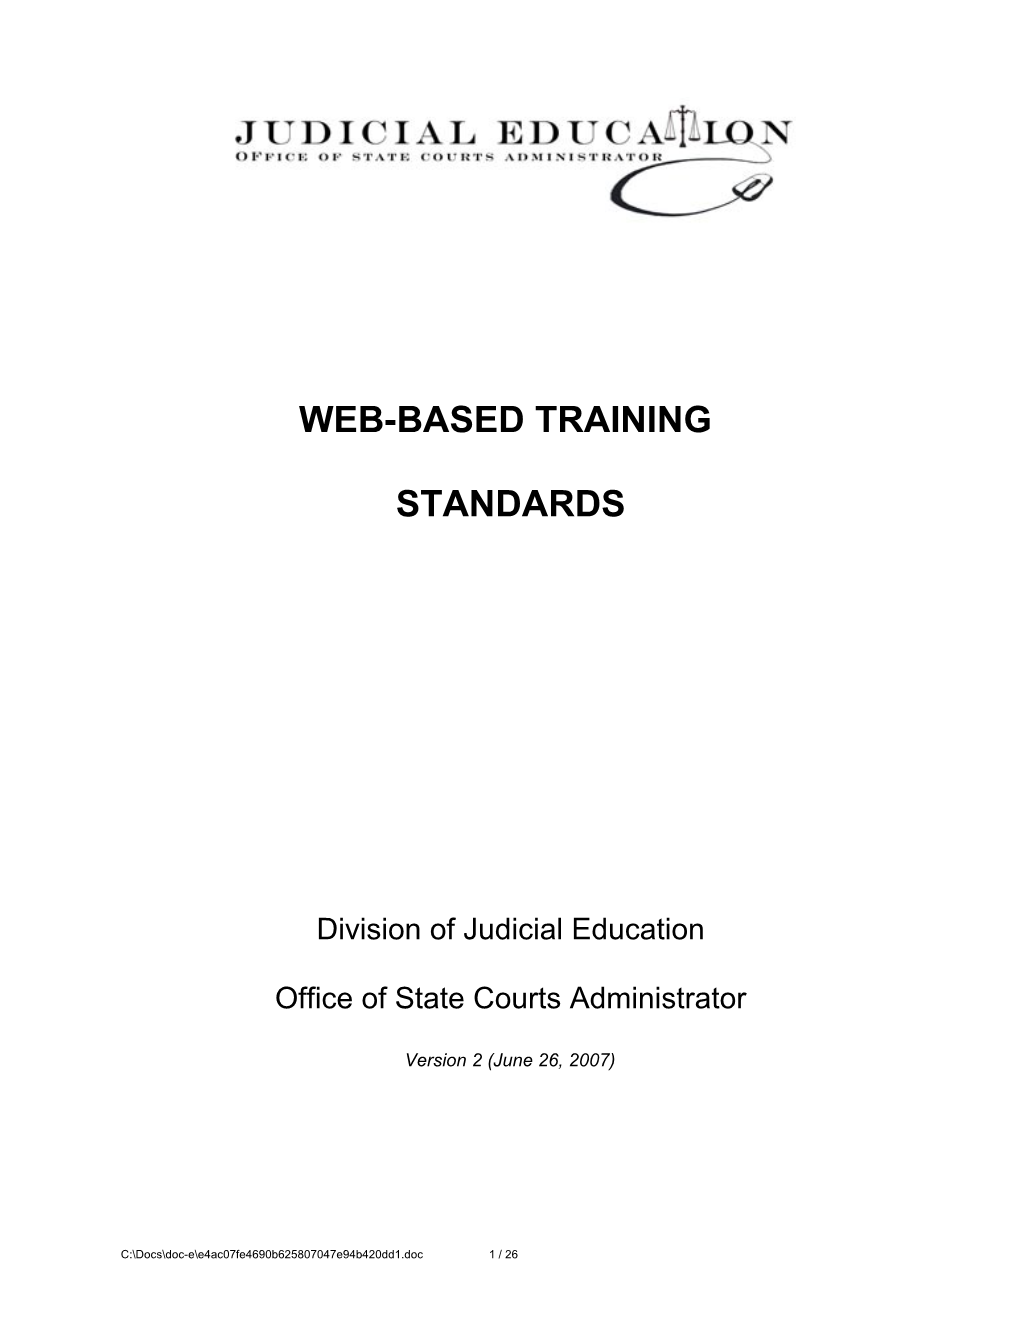 Web-Based Training Standards